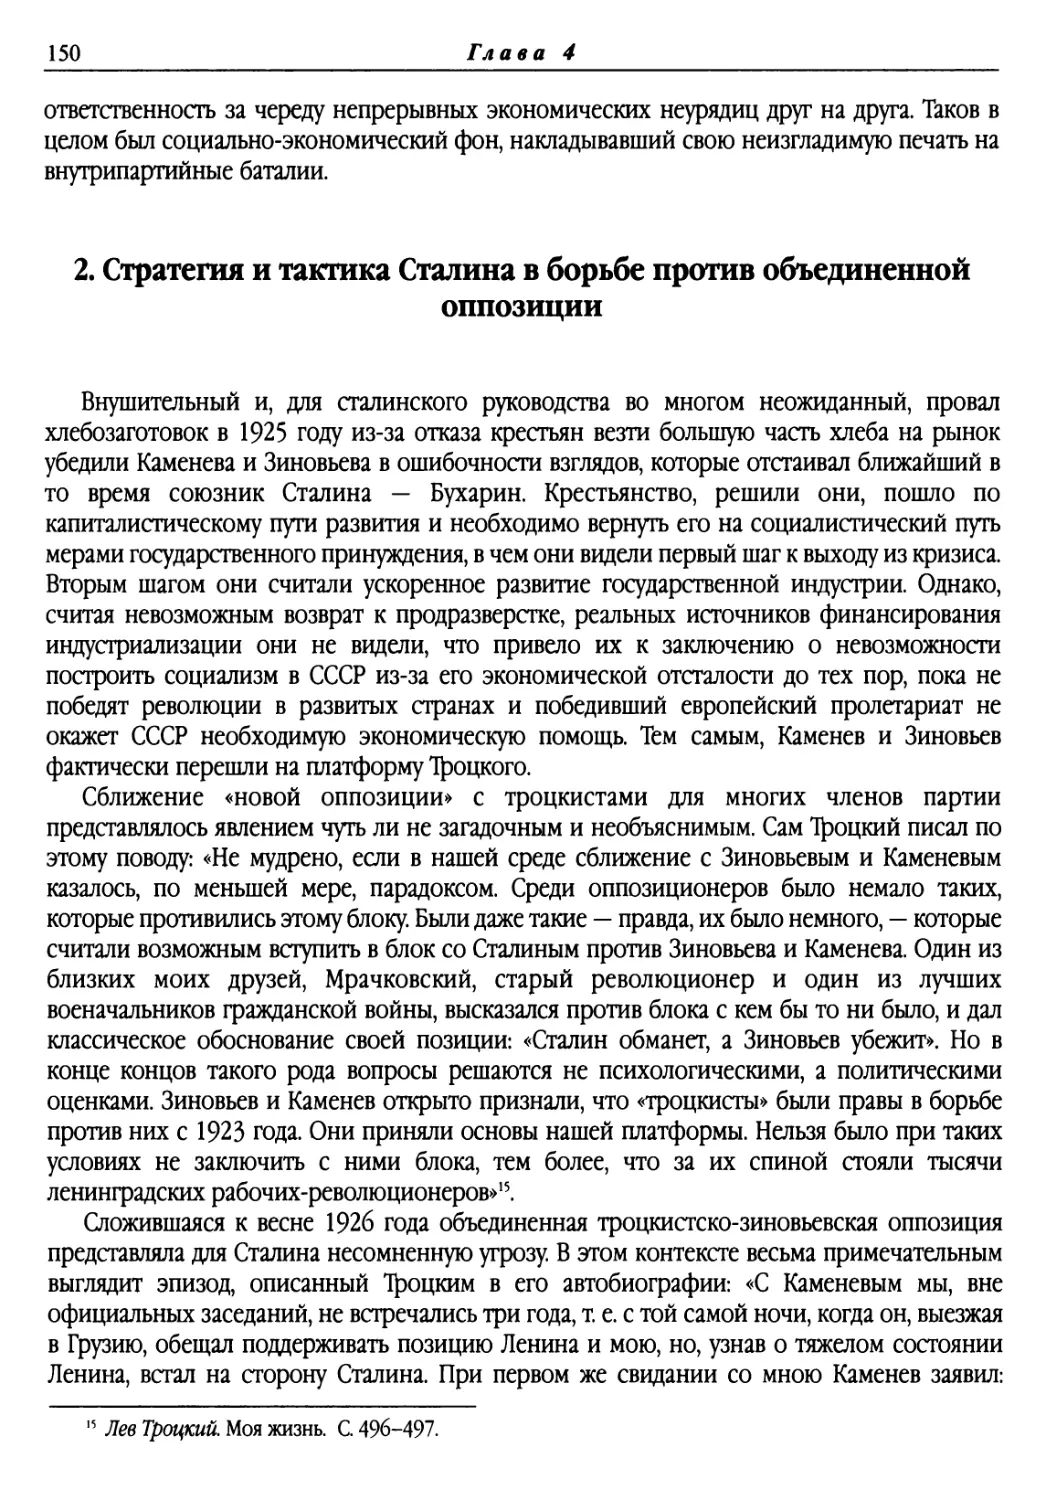 2. Стратегия и тактика Сталина в борьбе против объединенной оппозиции